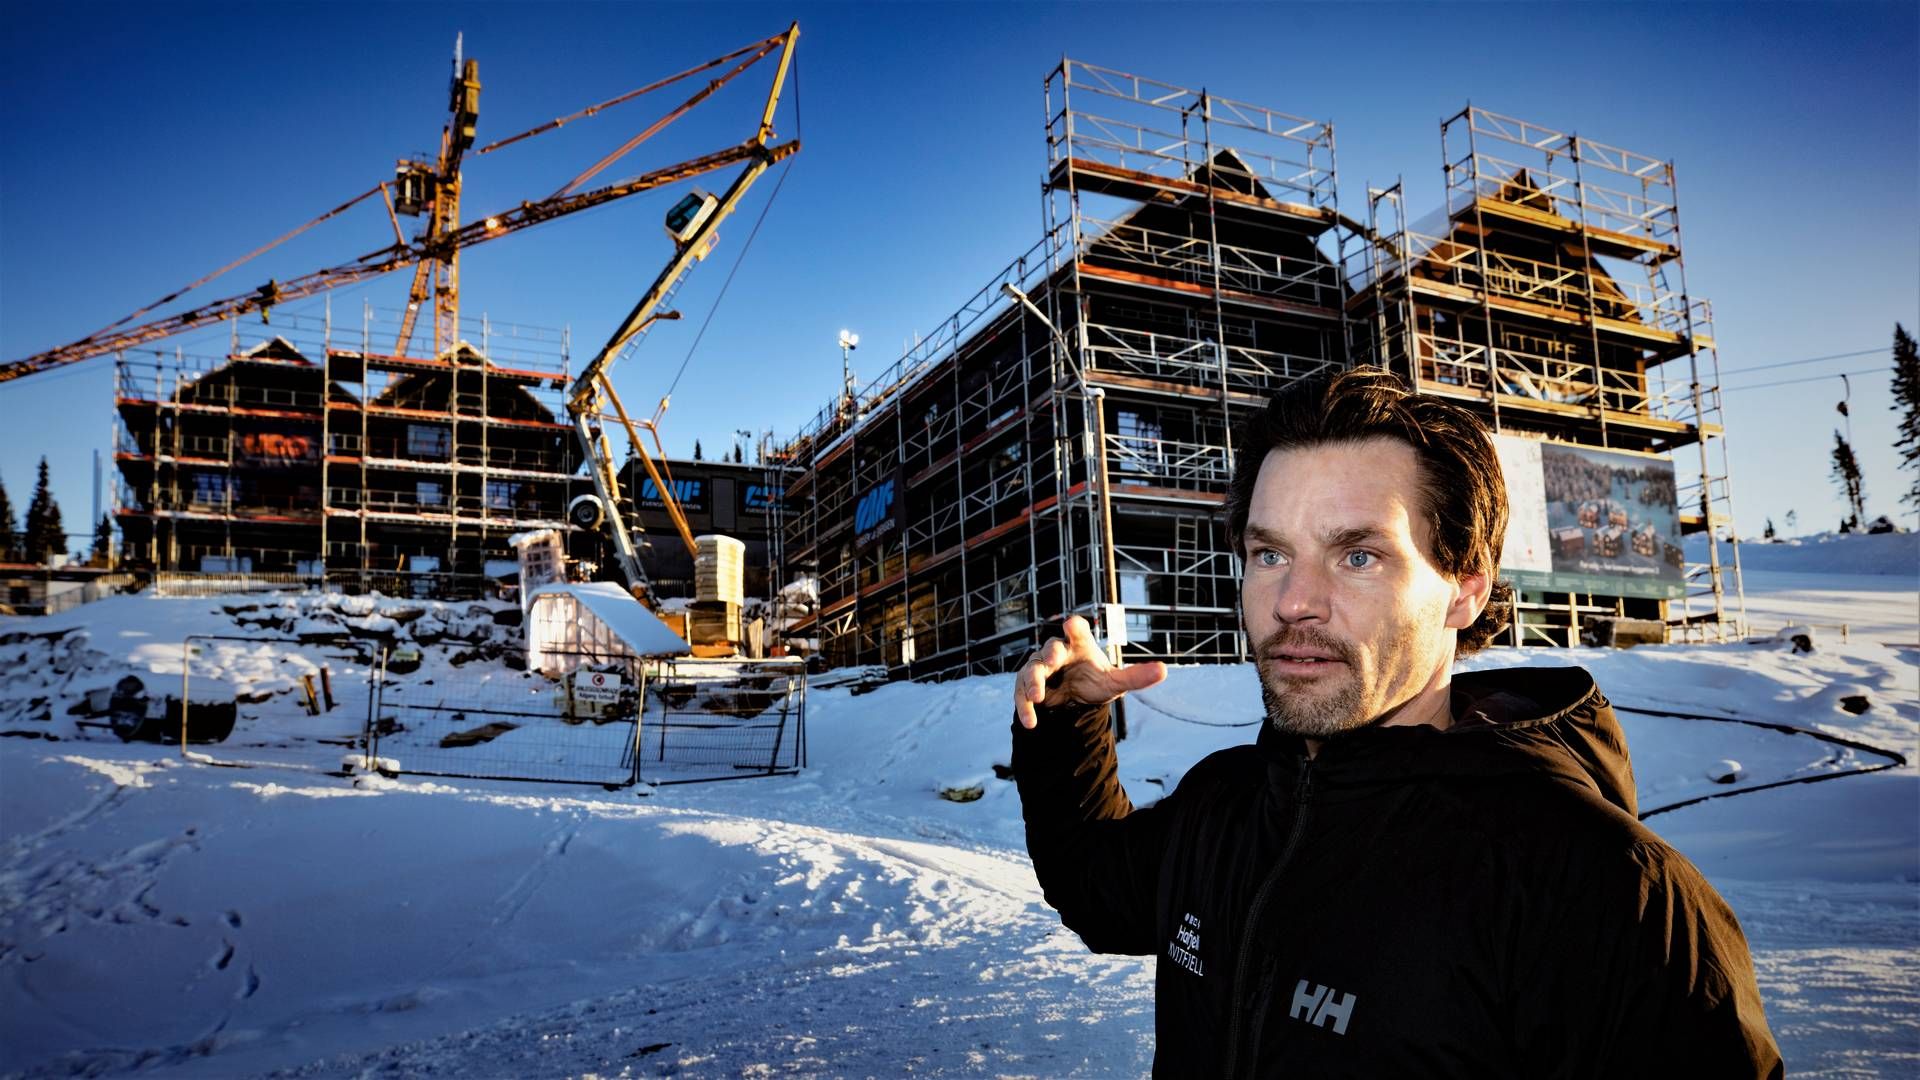 MOT HIMMELEN: Det bygges stadig ut i Hafjell takket være Anders Buchardt og AB Invest. På bildet ser vi det neste byggetrinnet til Favn-prosjektet, som stammer fra et samarbeid mellom Buchardt og Aksel Lund Svindal. | Foto: Geir Olsen